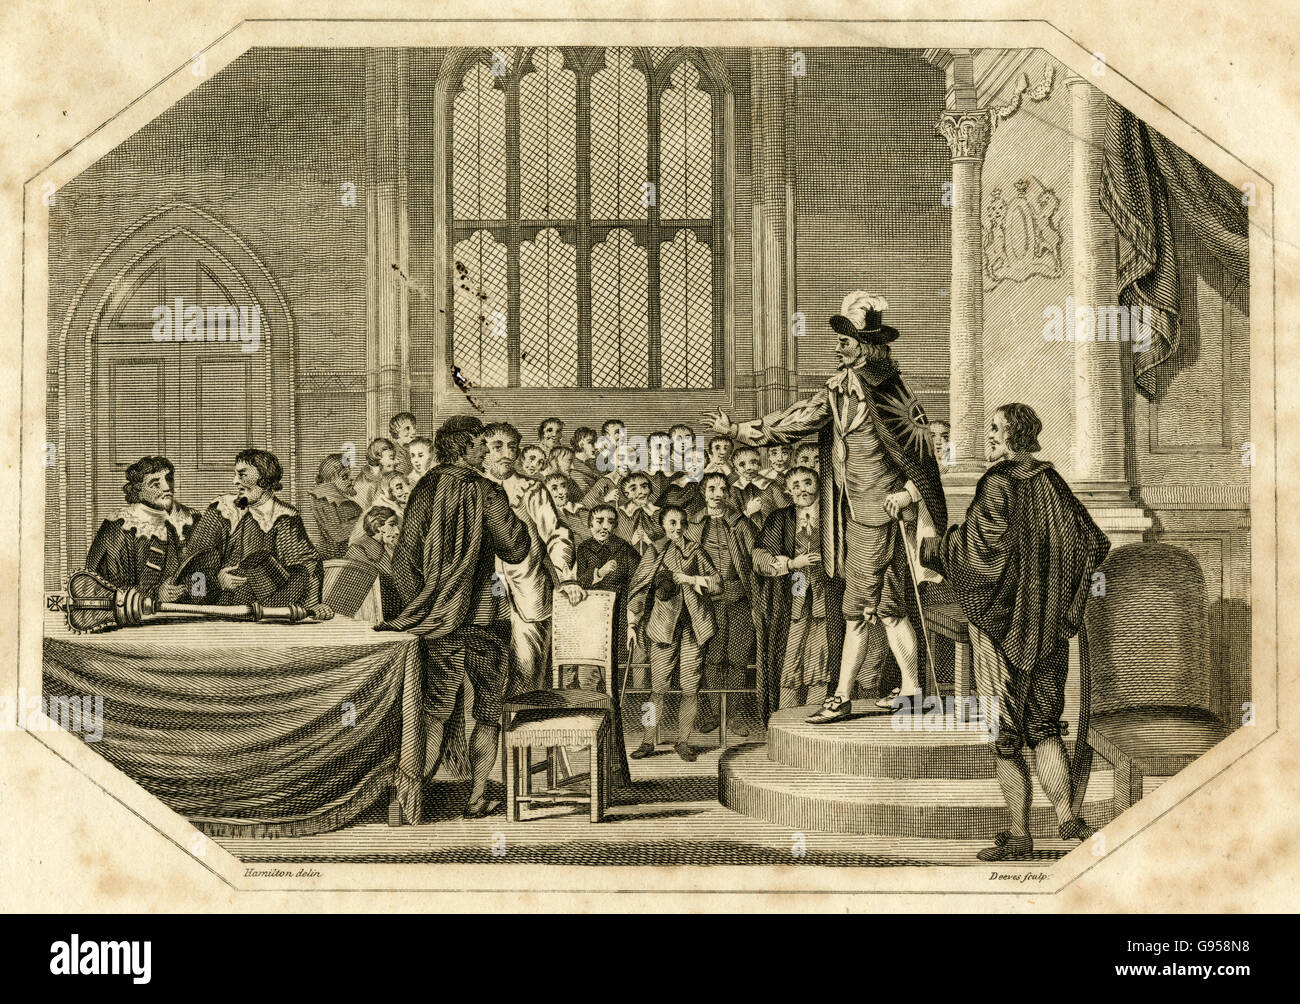 Antike 1803 Gravur, Charles ich richtet sich an Parlament und "anspruchsvolle Personen von den fünf Mitgliedern, die er des Verrats beschuldigt hatte" am 3. Januar 1642. QUELLE: ORIGINAL GRAVUR. Stockfoto